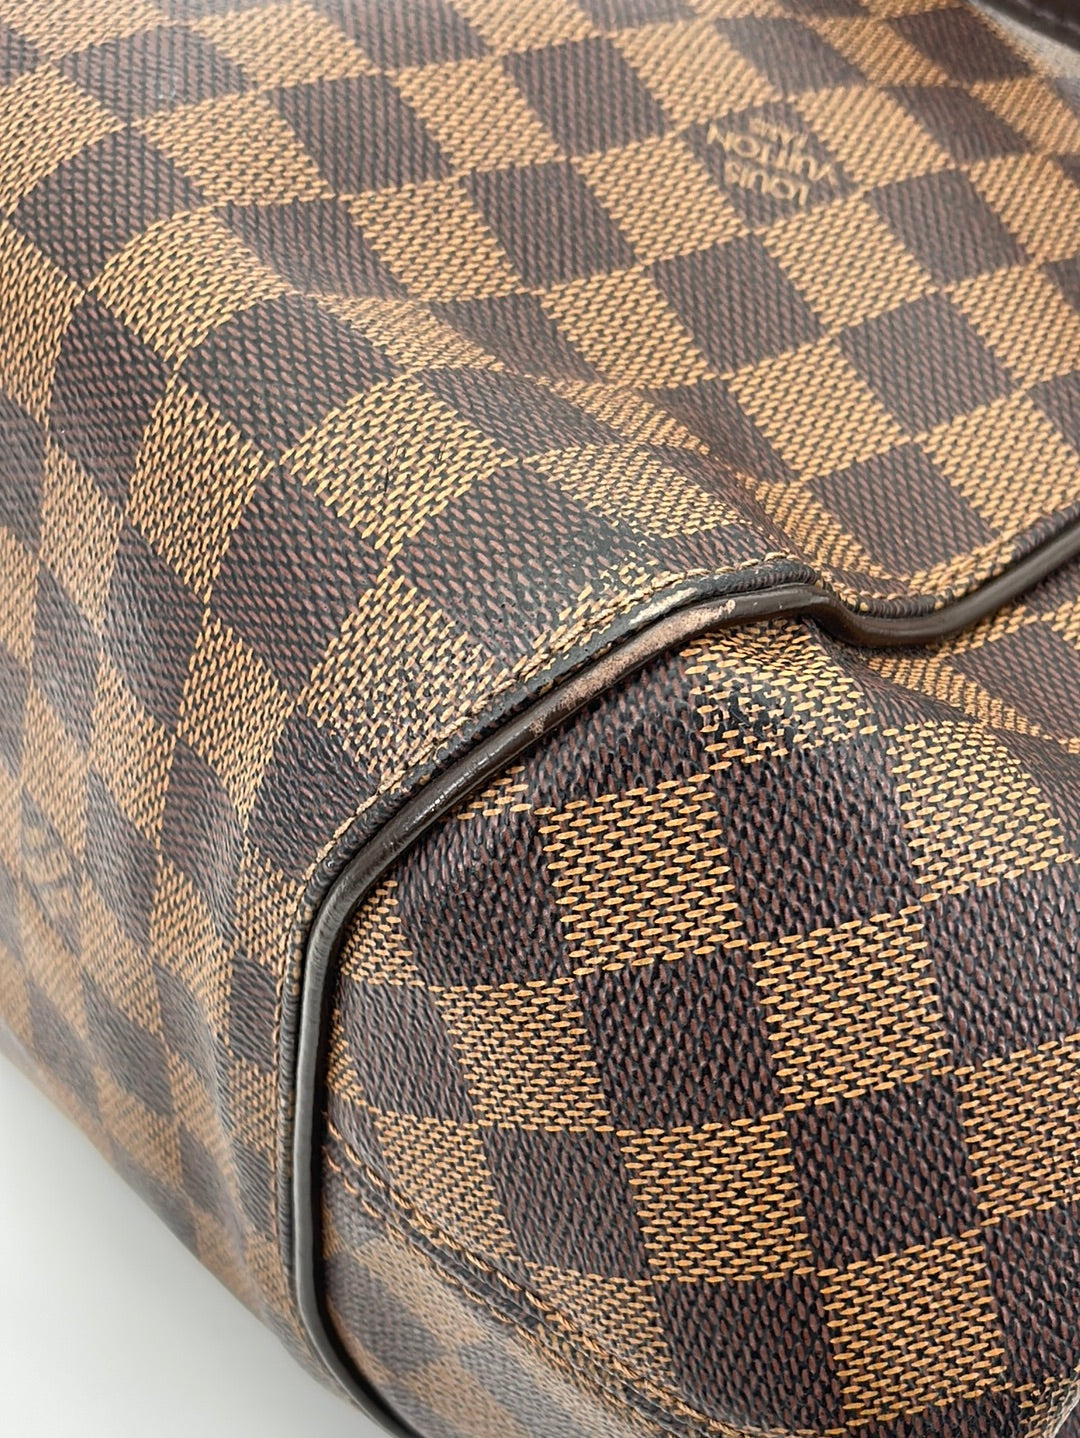 RDC12638 Authentic Louis Vuitton Damier Ebene Sistina Shoulder Bag